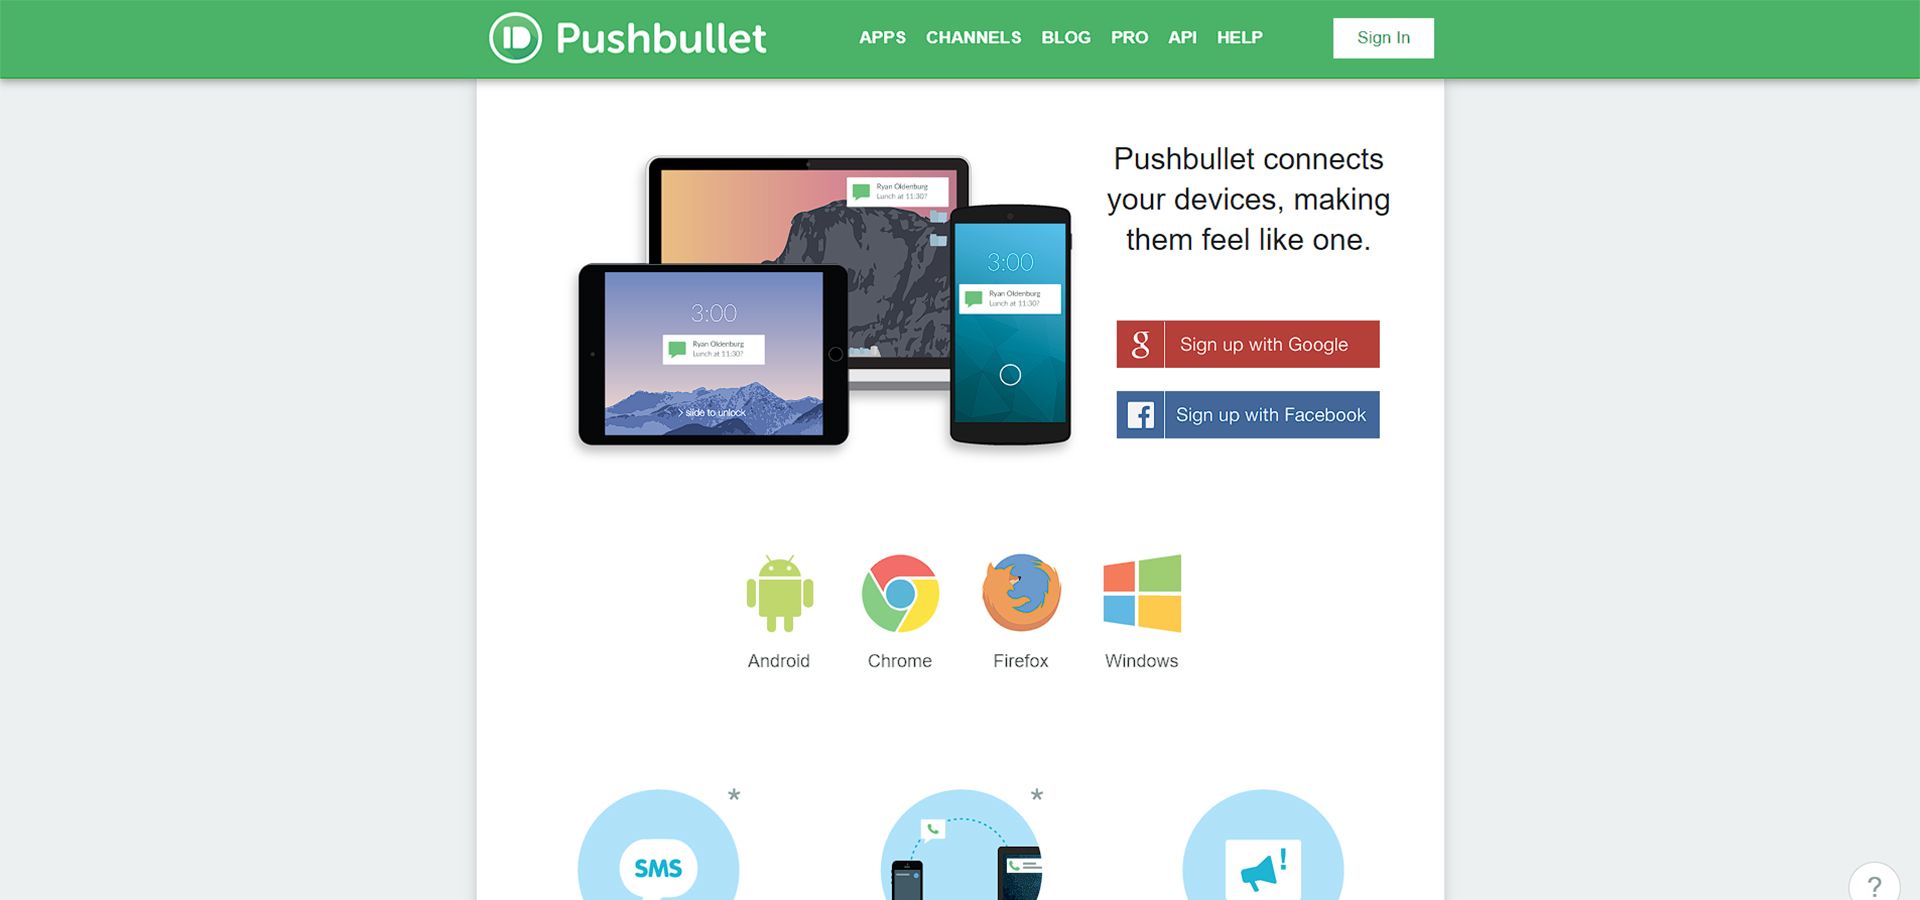 صفحه سایت Pushbullet که اطلاعات نسخه های مختلف آن را نوشته است